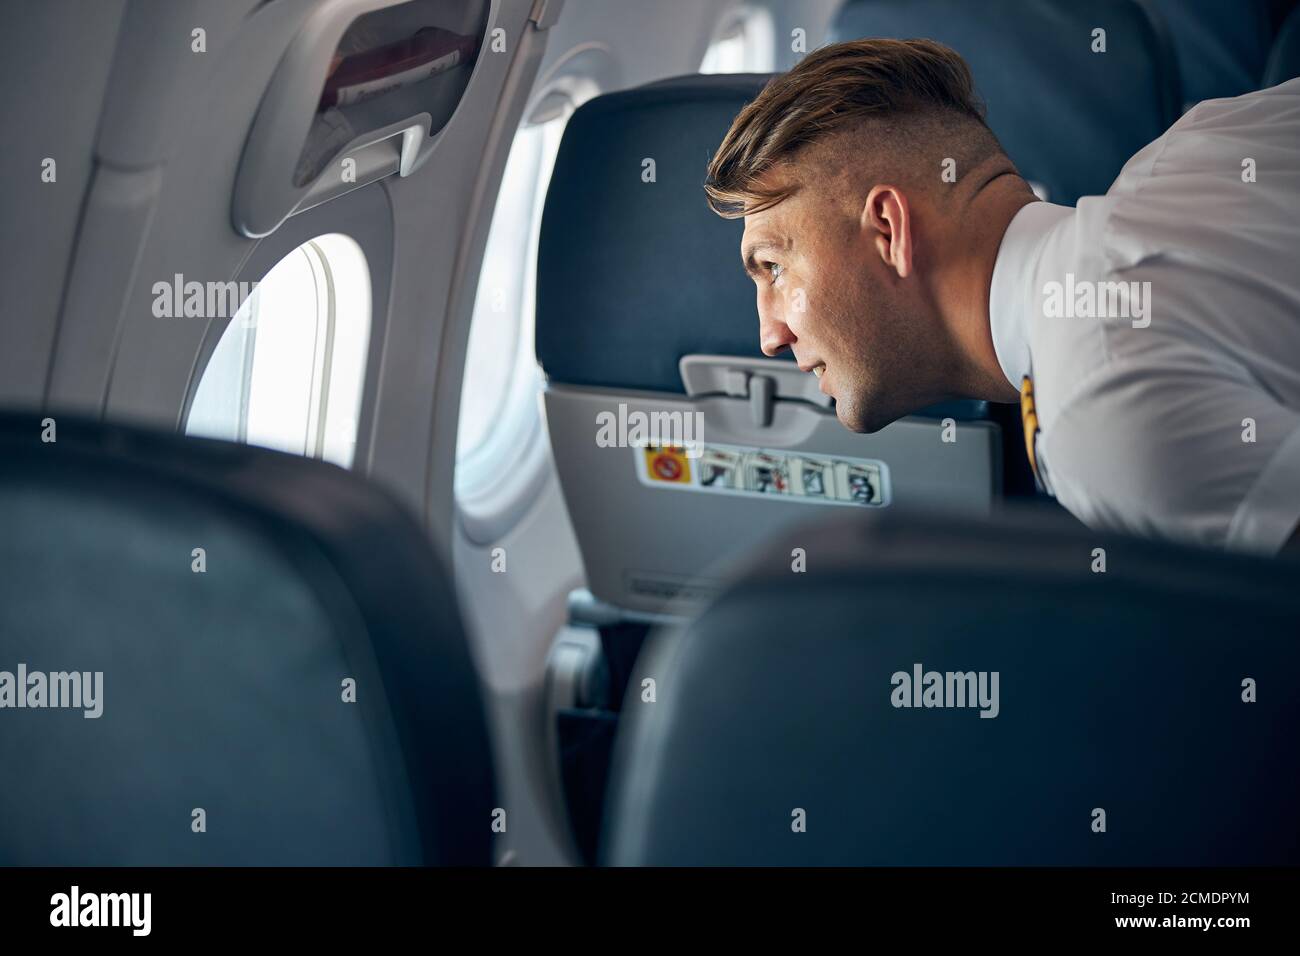 Homme souriant en uniforme debout à l'illuminateur dans l'avion Banque D'Images